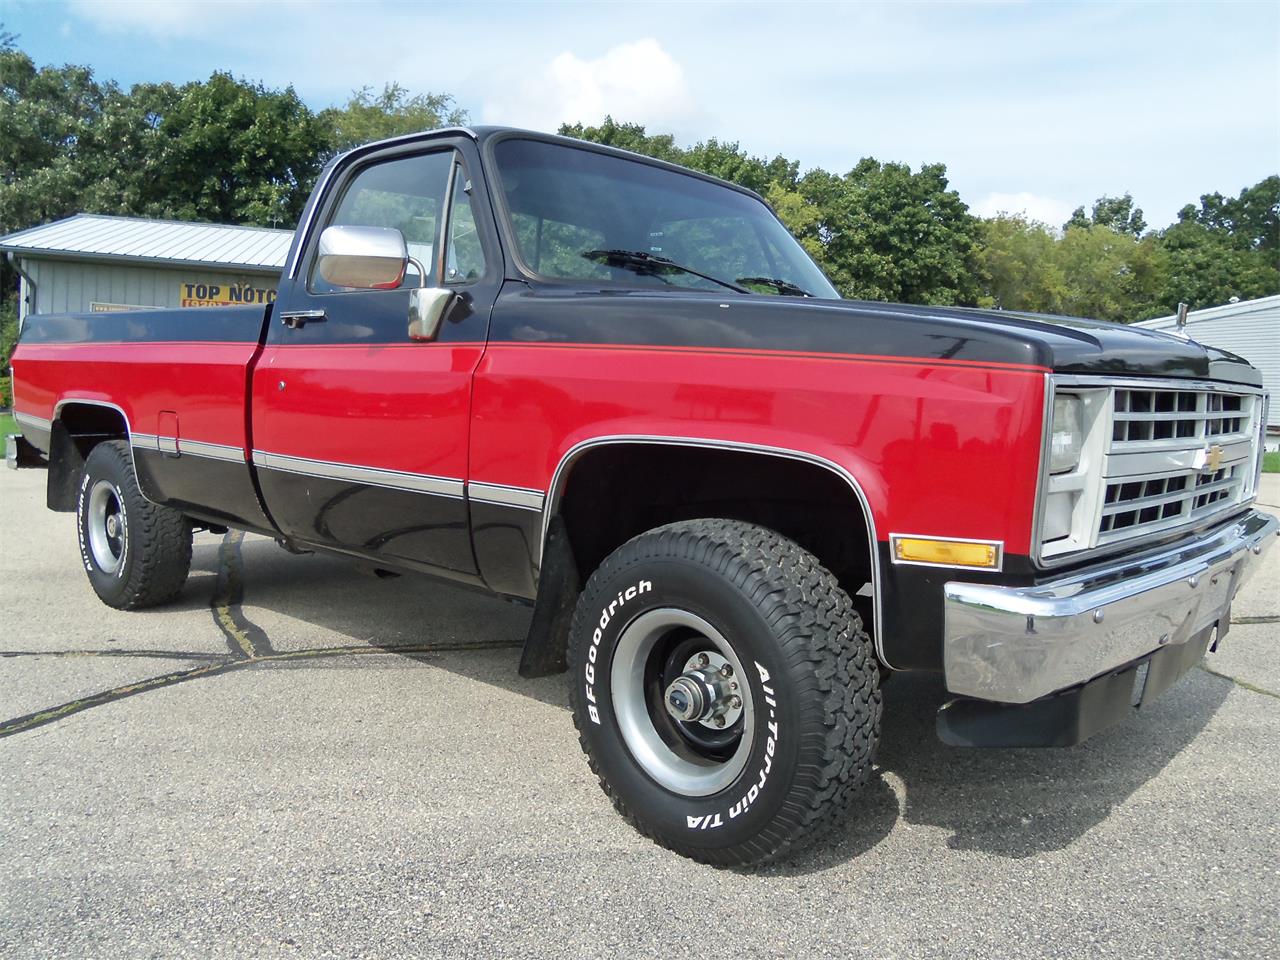 For Sale: 1987 Chevrolet Scottsdale in Jefferson, Wisconsin.